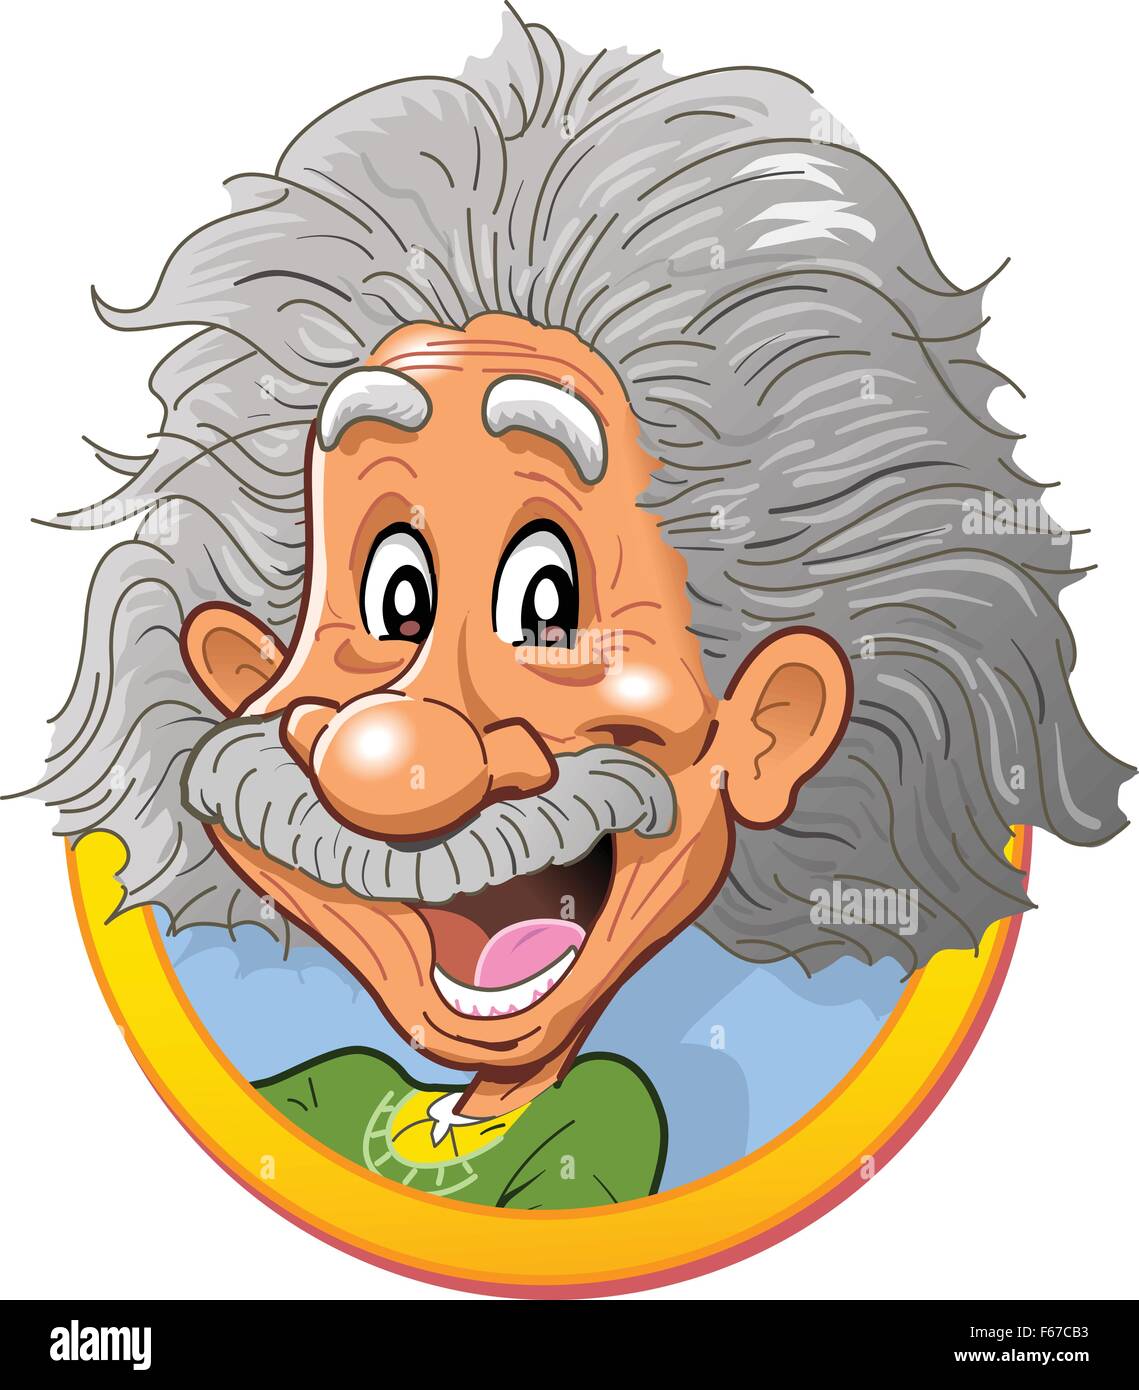 Fun heureux Vignette Tête à tête d'Albert Einstein Illustration de Vecteur